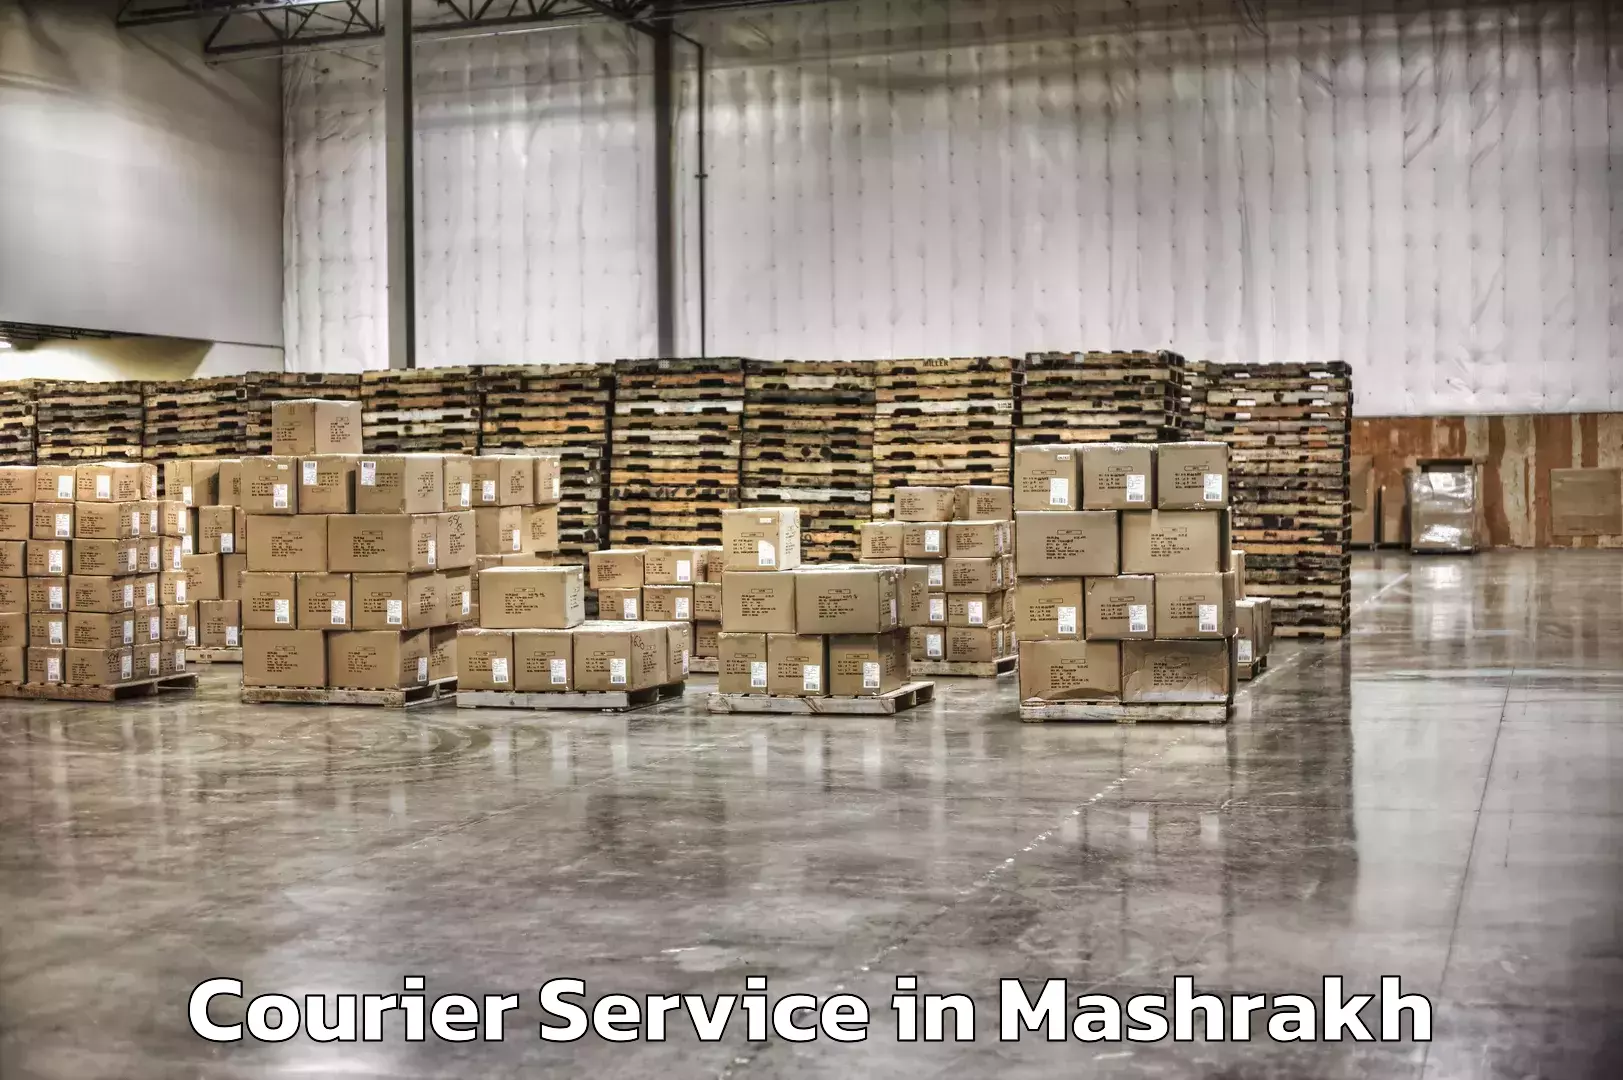 Nationwide delivery network in Mashrakh